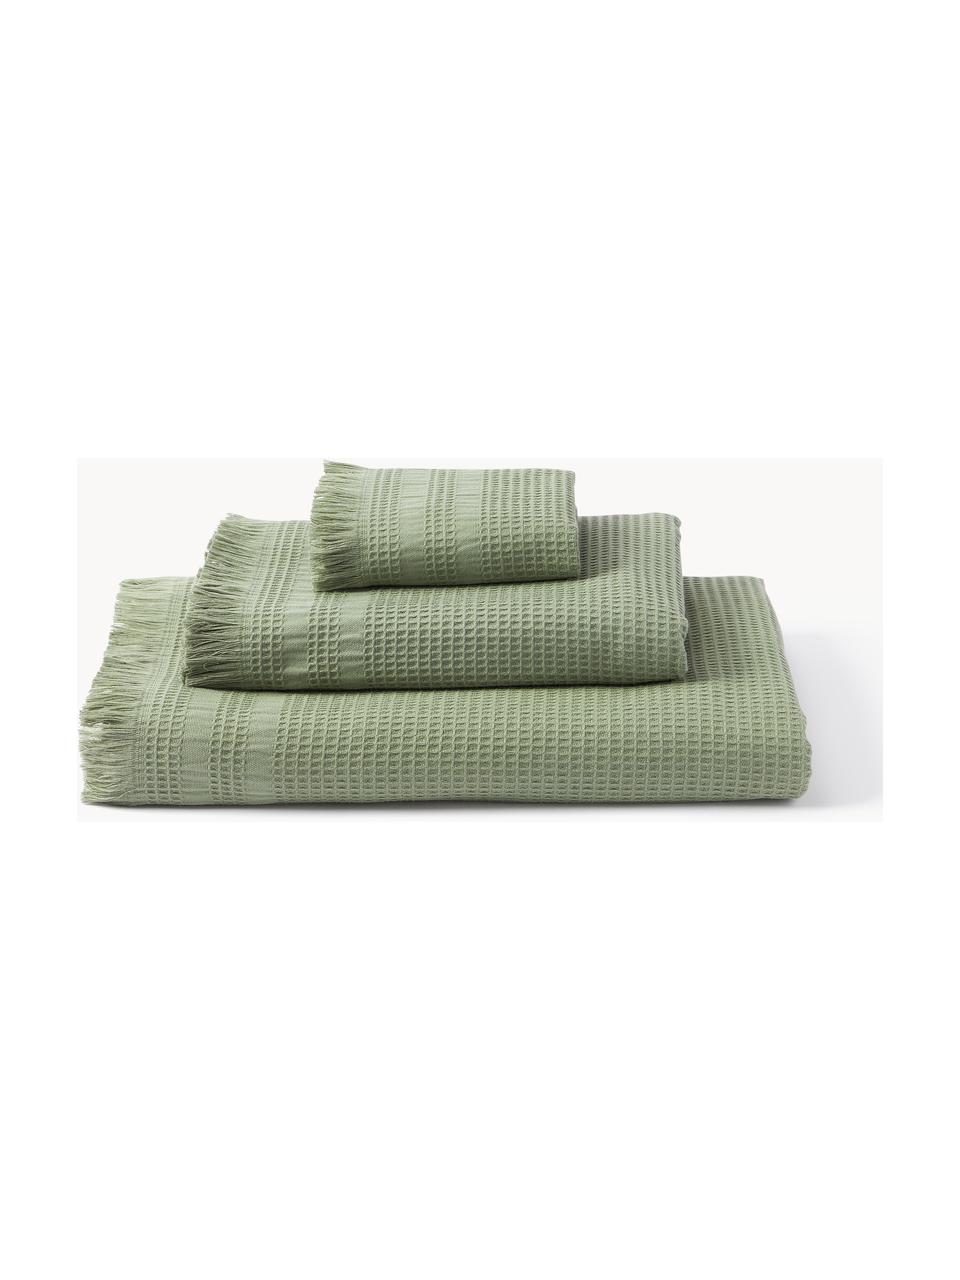 Komplet ręczników z piki waflowej Yara, 3 elem., Oliwkowy zielony, Komplet z różnymi rozmiarami